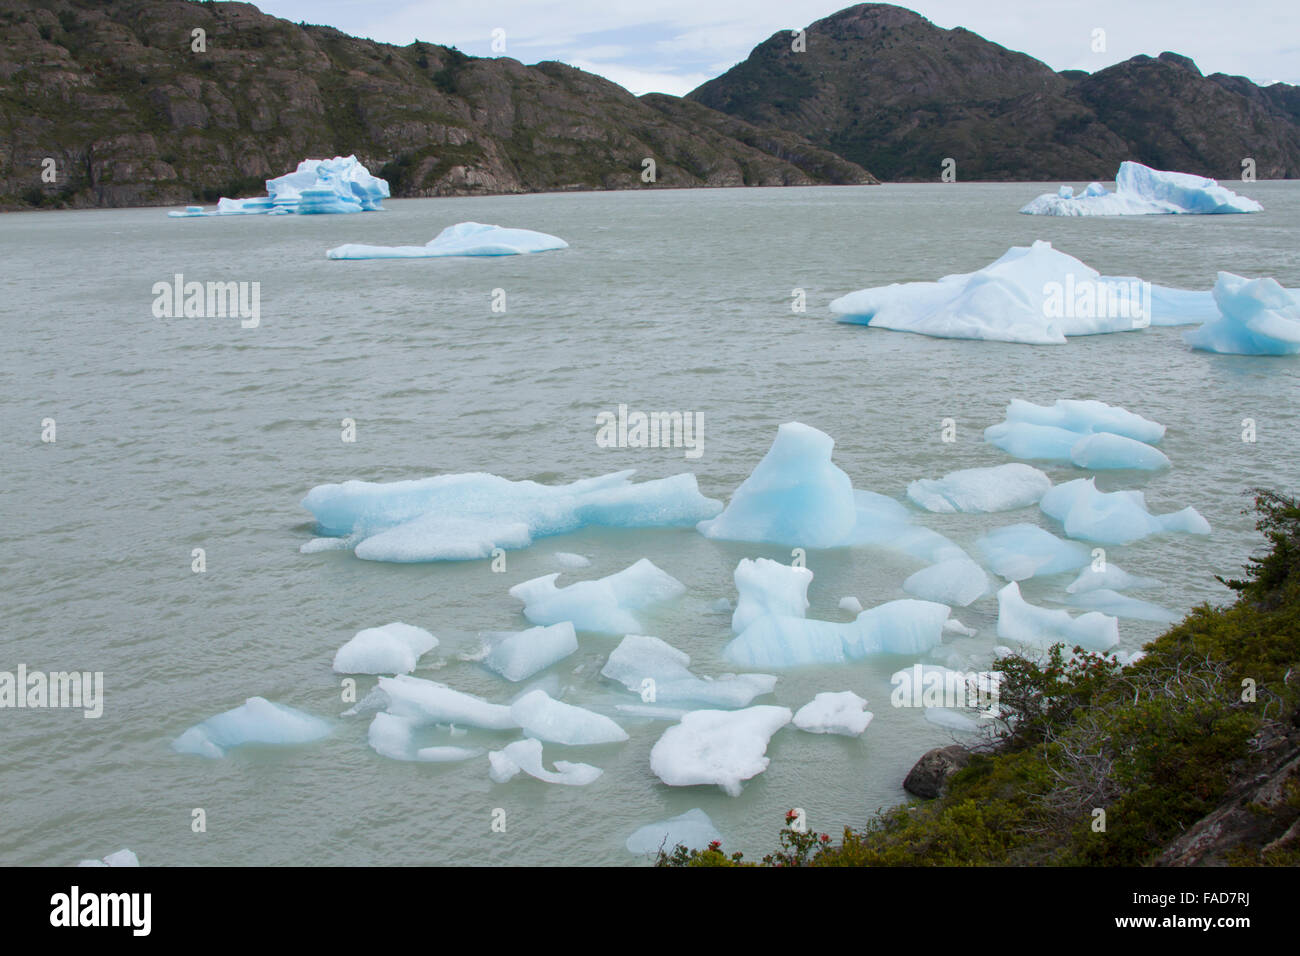 La glace flotte et les icebergs du Glacier Grey dans le lac à Torres del Paine en Patagonie, au Chili. Banque D'Images